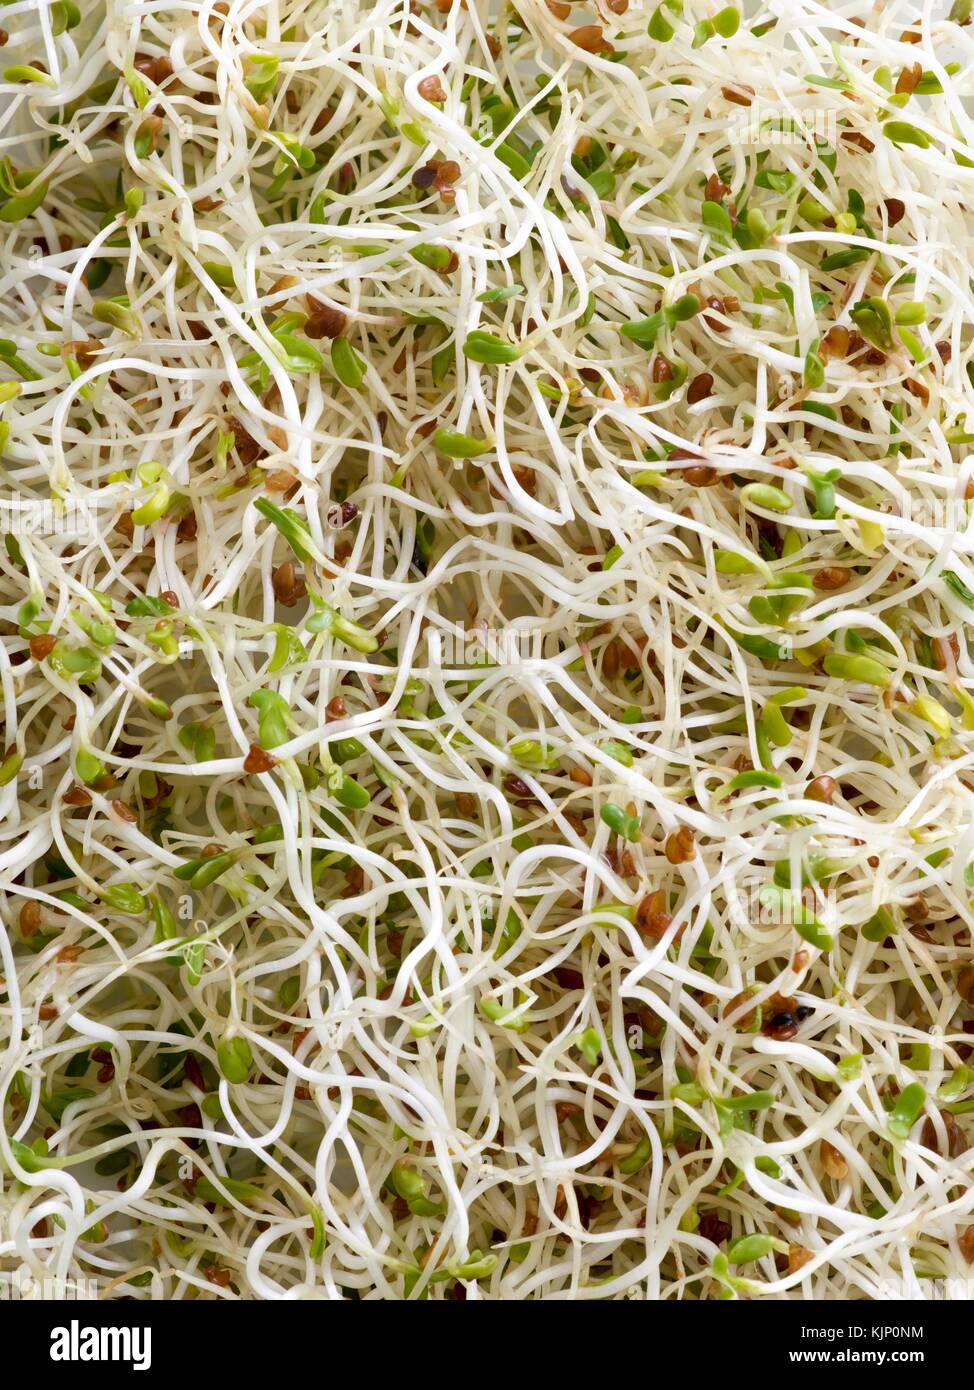 Sprouting alfalfa, full frame. Stock Photo